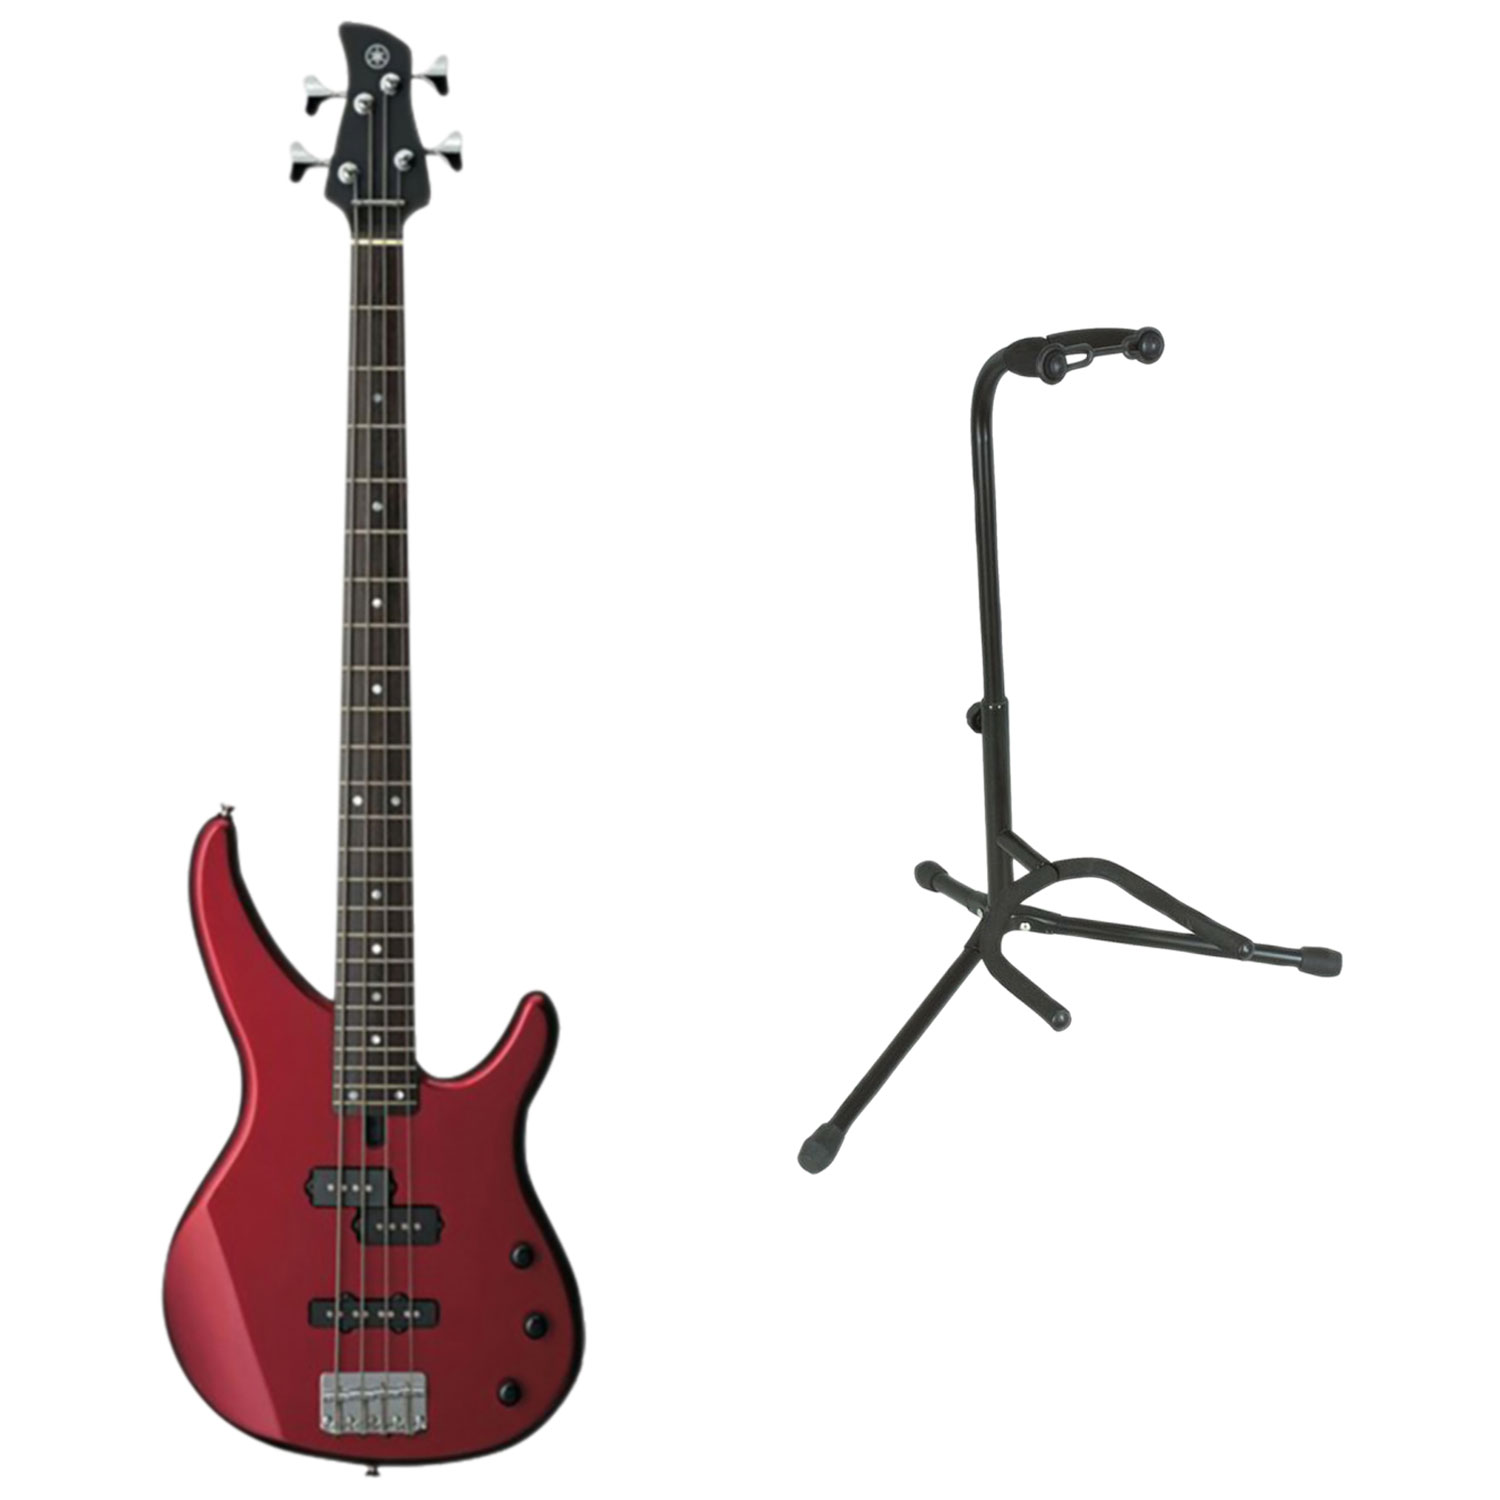 Yamaha TRBX Series Bass Guitar with Tubular Guitar Stand - Red Metallic